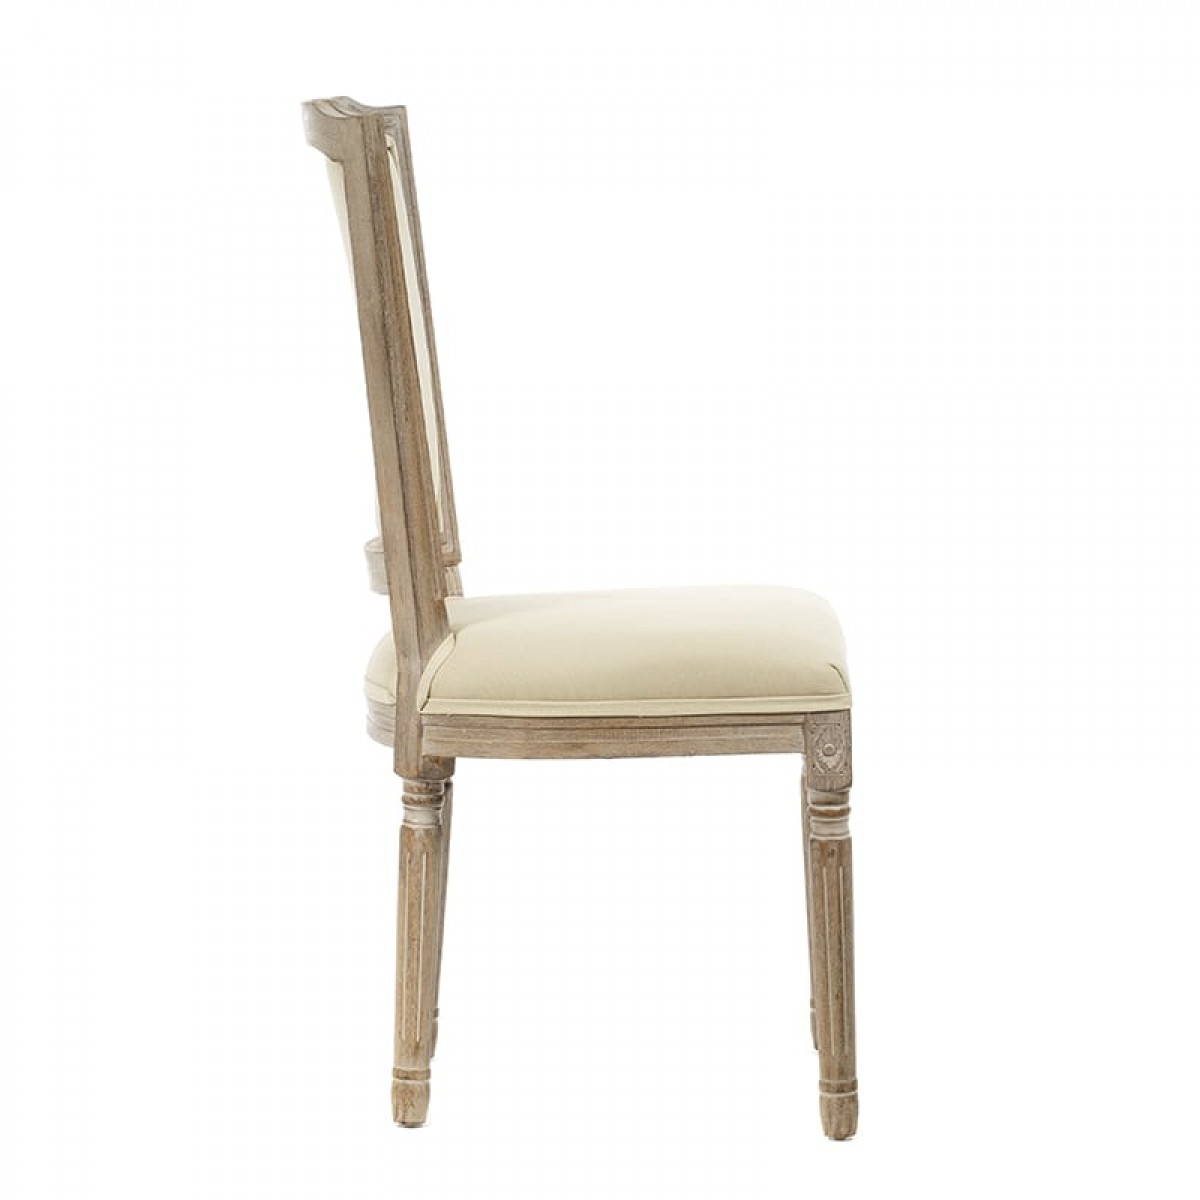 Αντικέ καρέκλα υφασμάτινη με ξύλο σε μπεζ απόχρωση 50x54x9